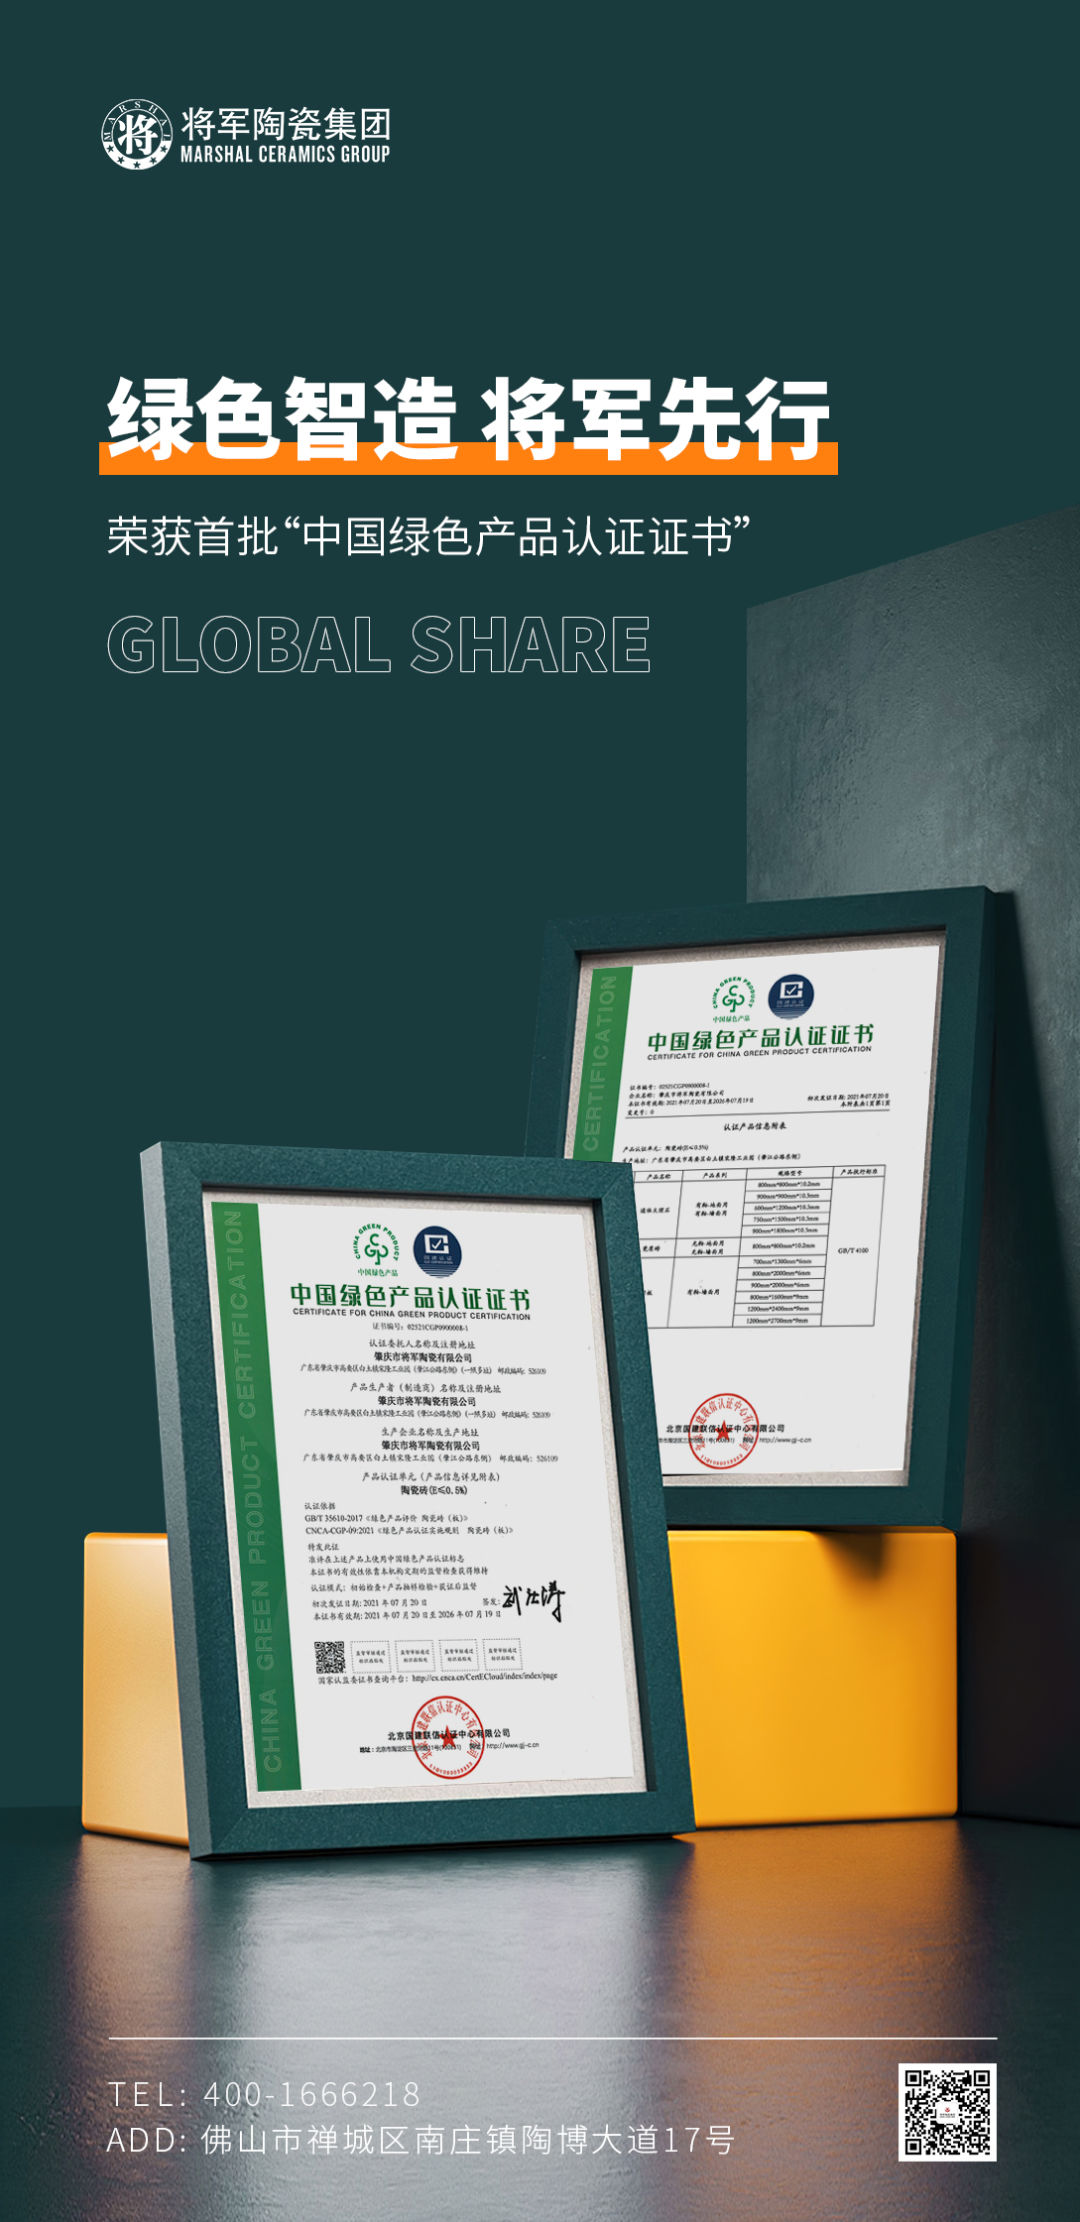 绿色智造 将军先行 | 将军陶瓷集团成为首批“中国绿色产品认证”企业(图1)